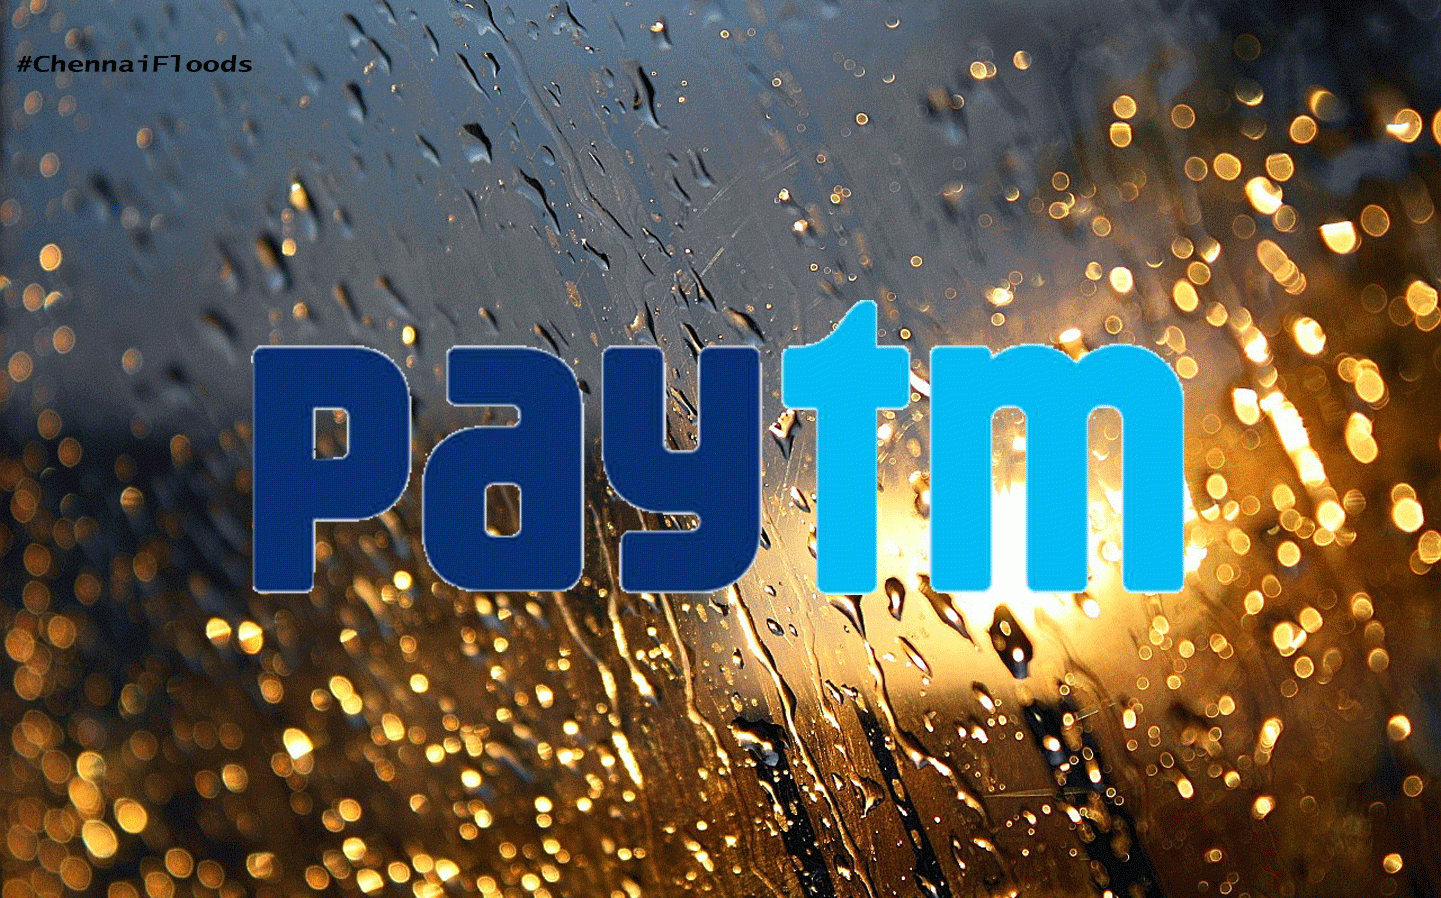 #ChennaiFloods: Paytm extiende Rs. 30 ayuda de recarga gratuita para residentes afectados por inundaciones